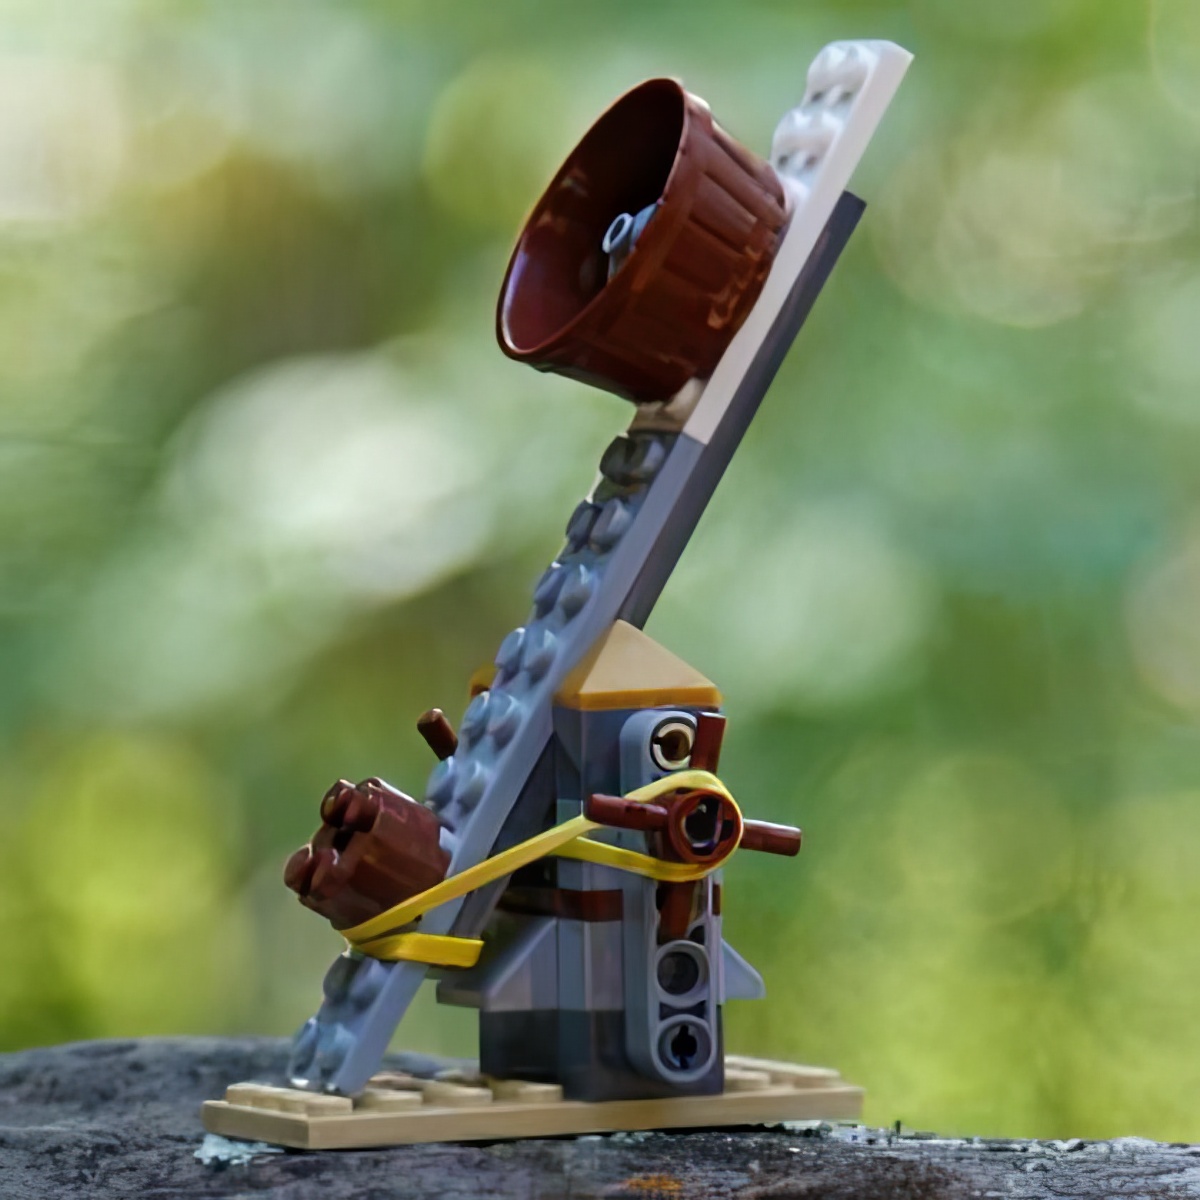 lego catapult, crafty lego catapult